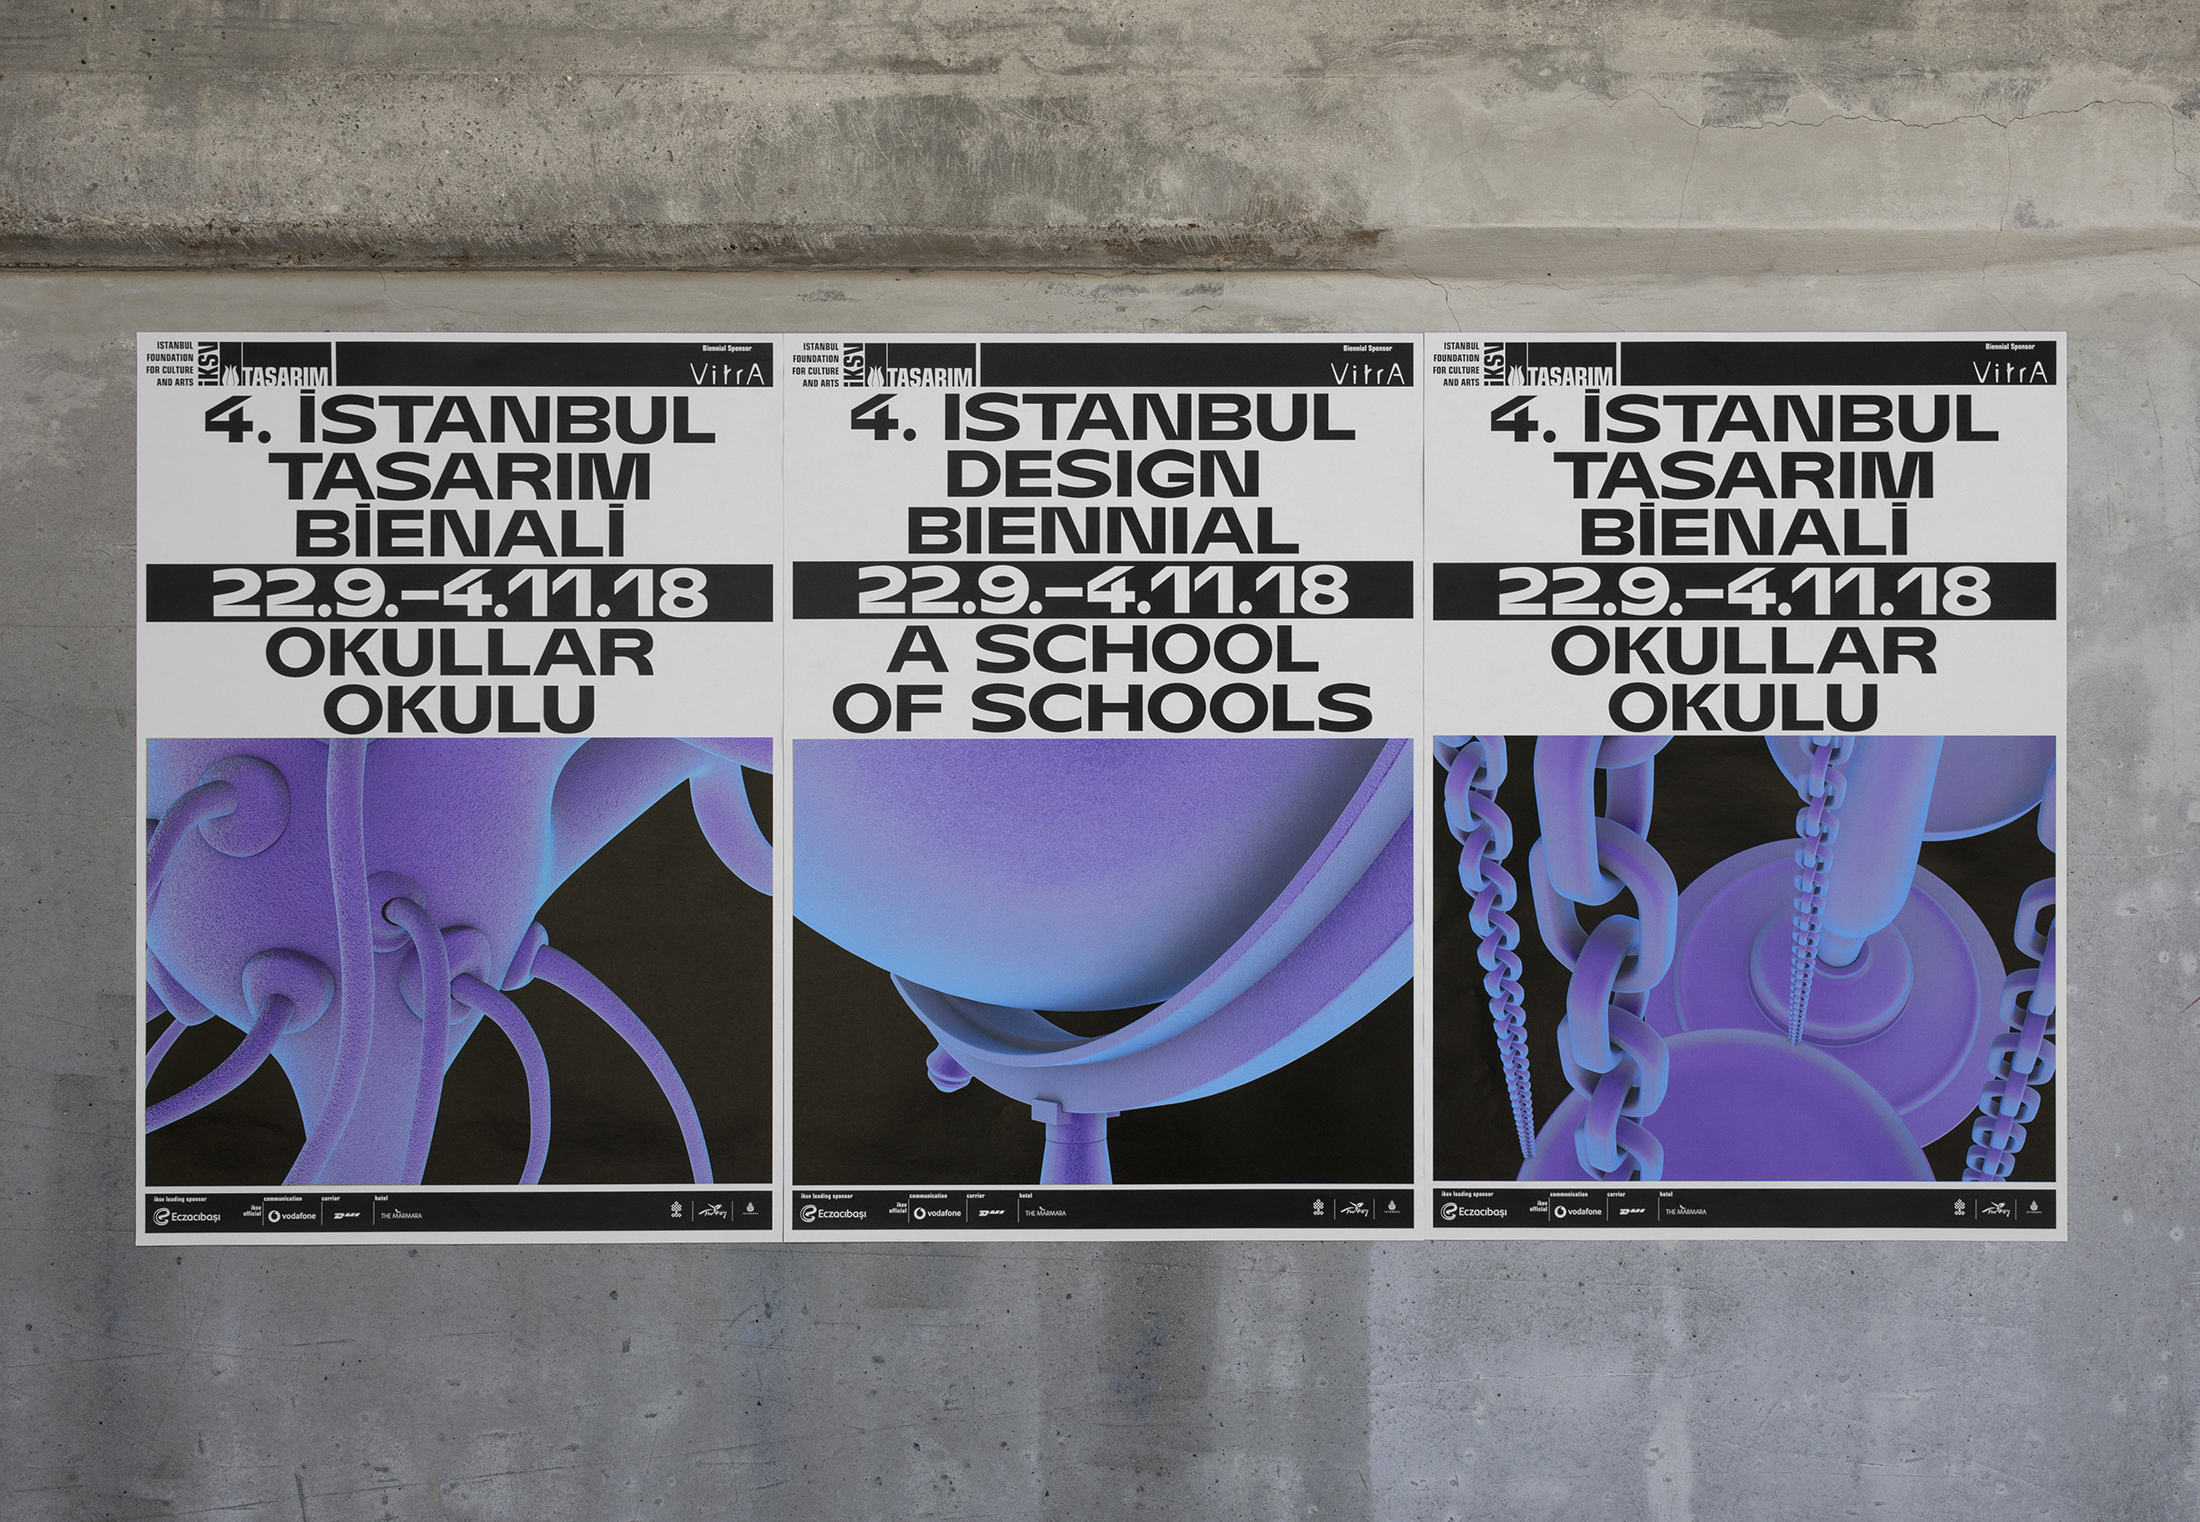 伊斯坦布尔设计双年展海报